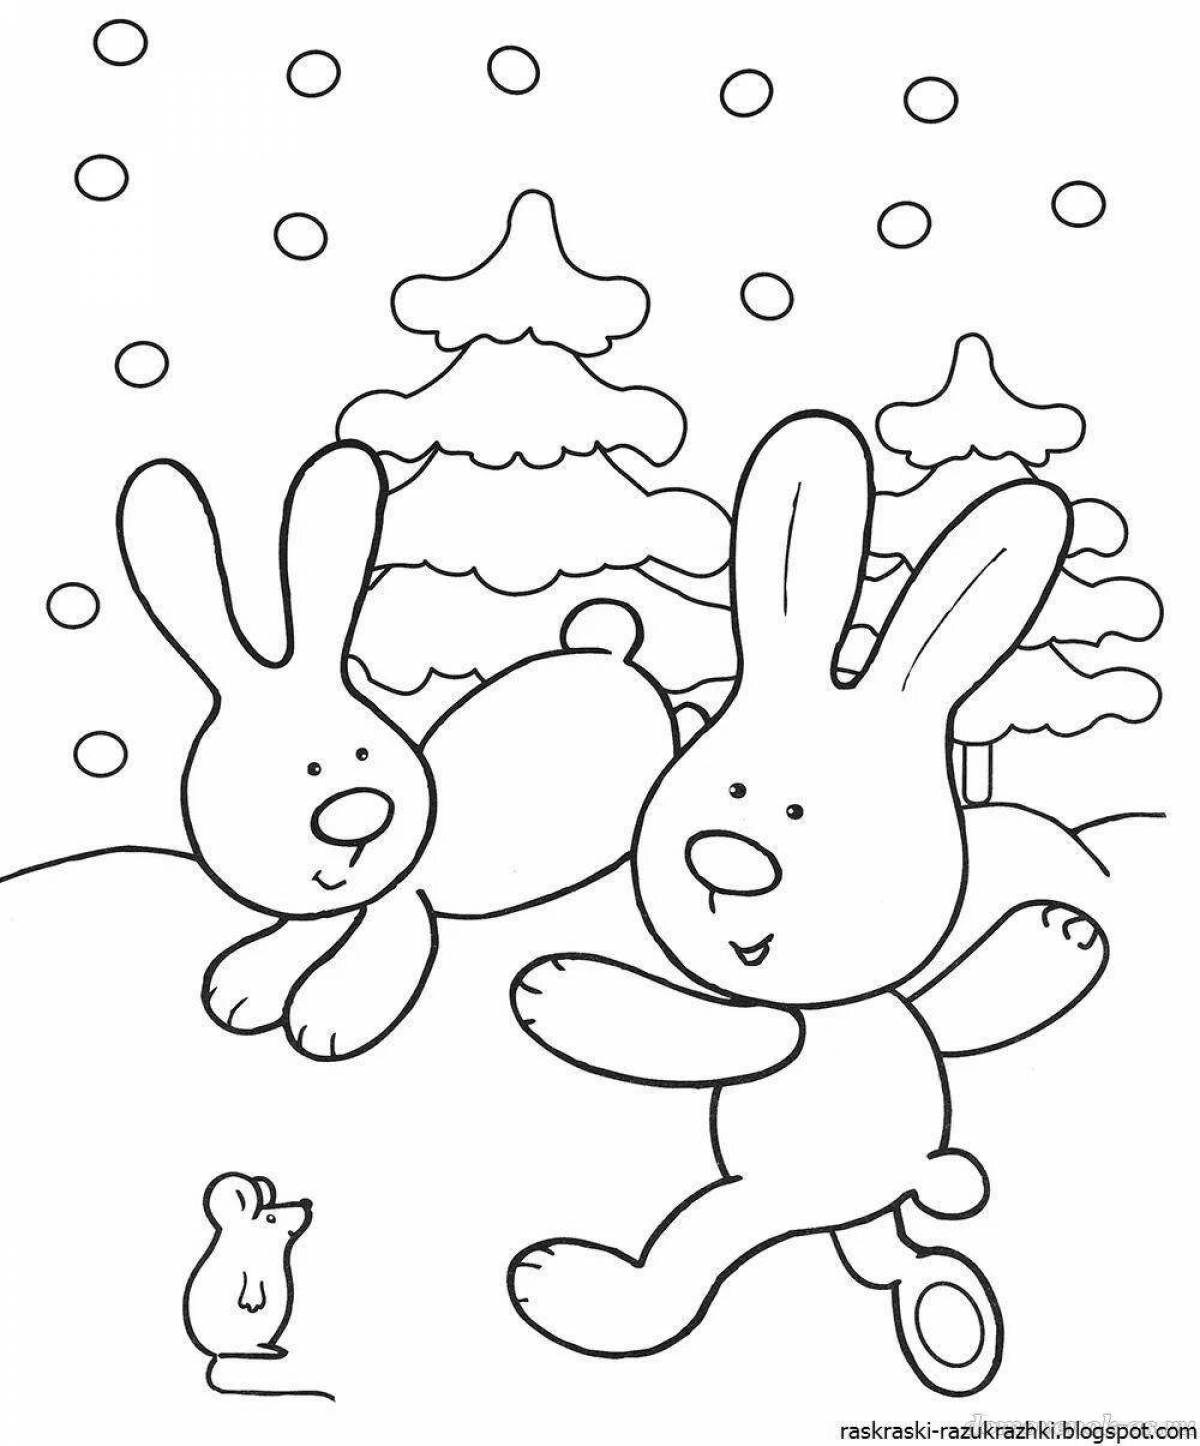 Волшебная зимняя раскраска для детей 2-3 лет